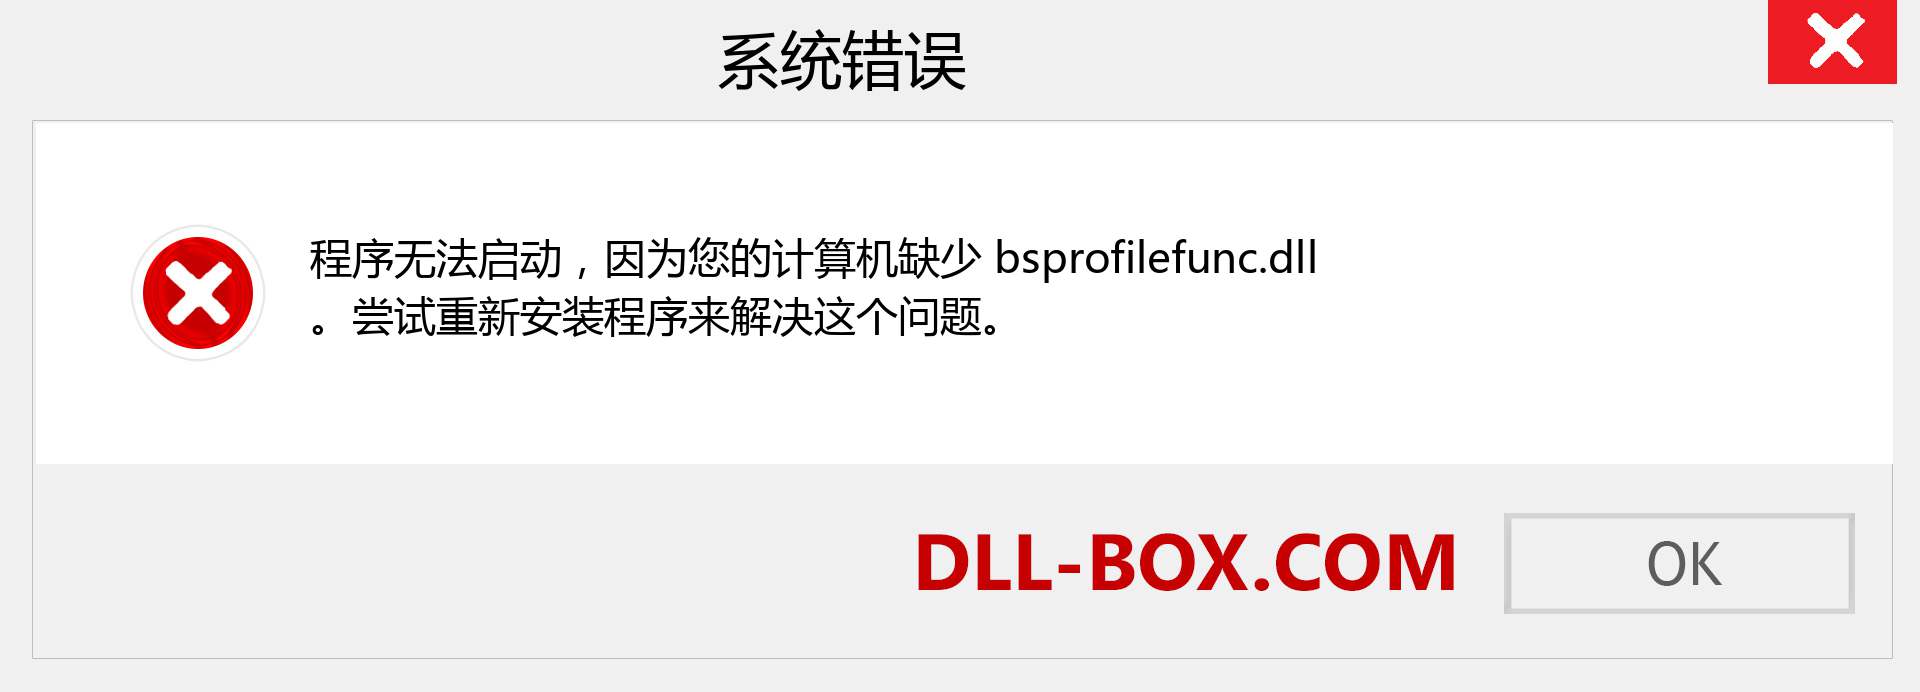 bsprofilefunc.dll 文件丢失？。 适用于 Windows 7、8、10 的下载 - 修复 Windows、照片、图像上的 bsprofilefunc dll 丢失错误